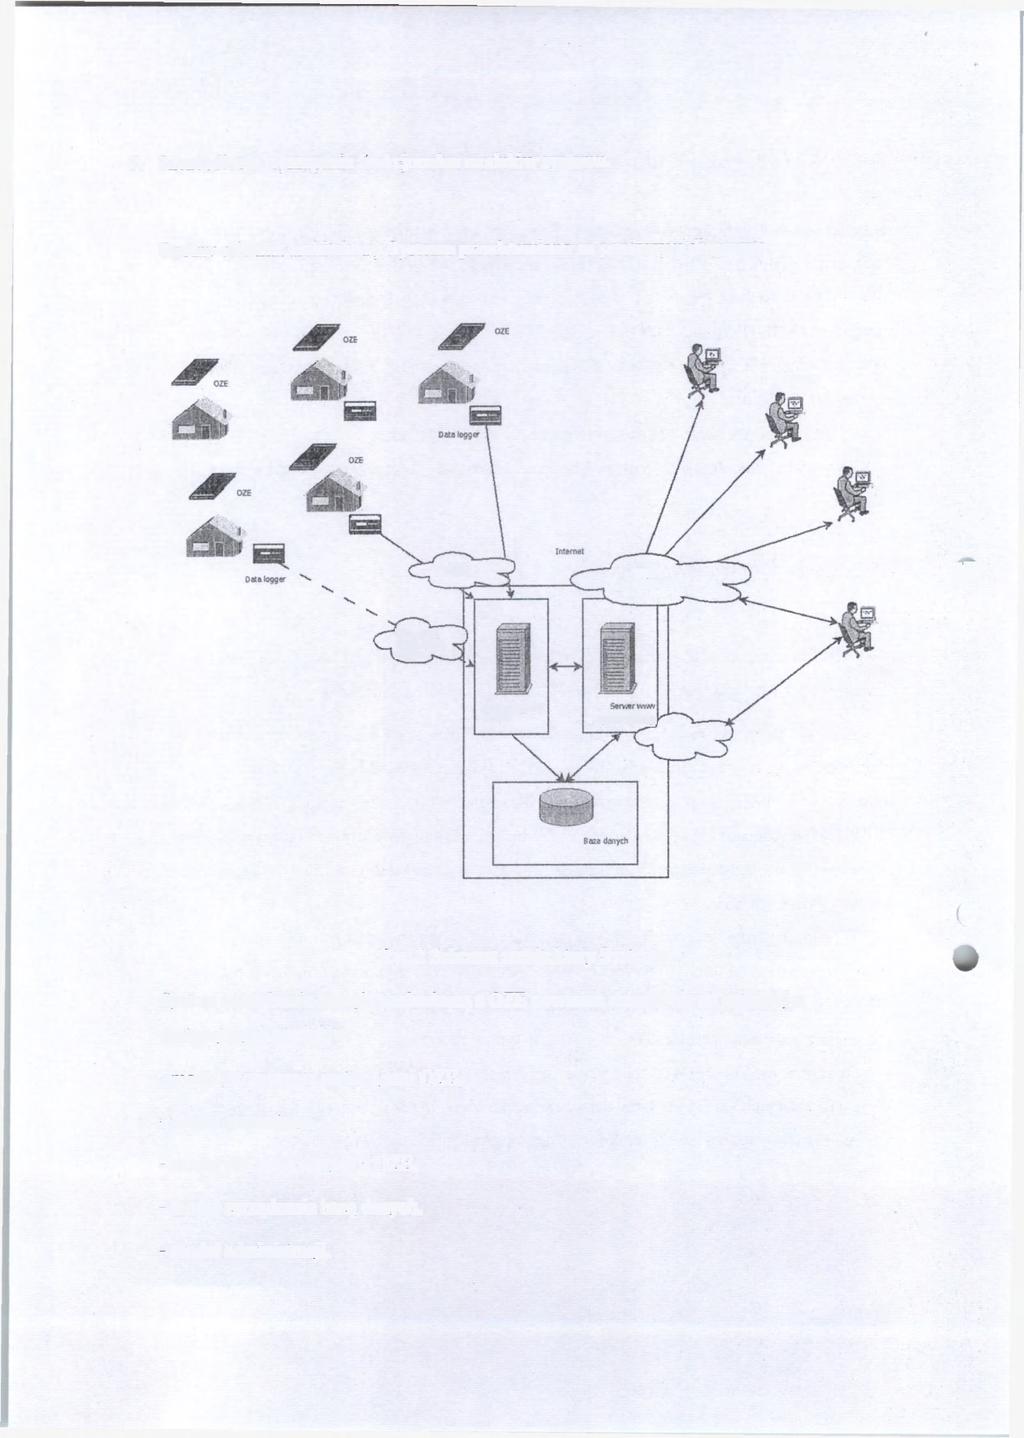 5. Szczegółowe wymagania funkcjonalne modułów systemu. Ogólny schemat architektury Systemu przedstawiono na poniższym diagramie.